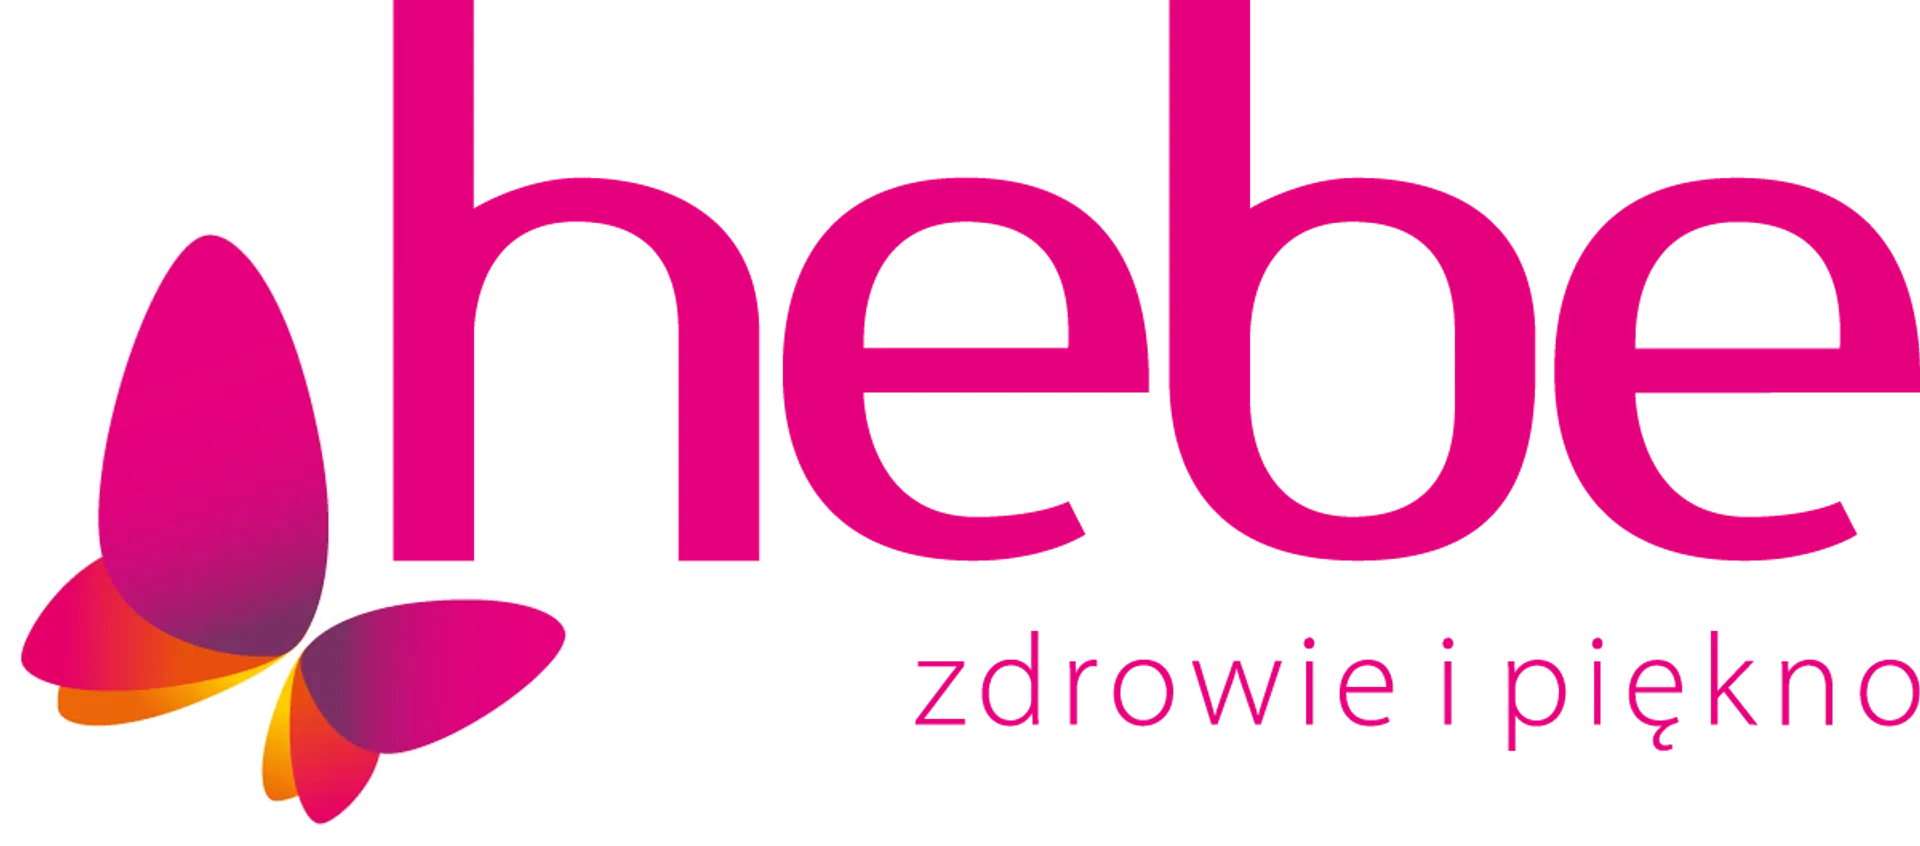 HEBE logo